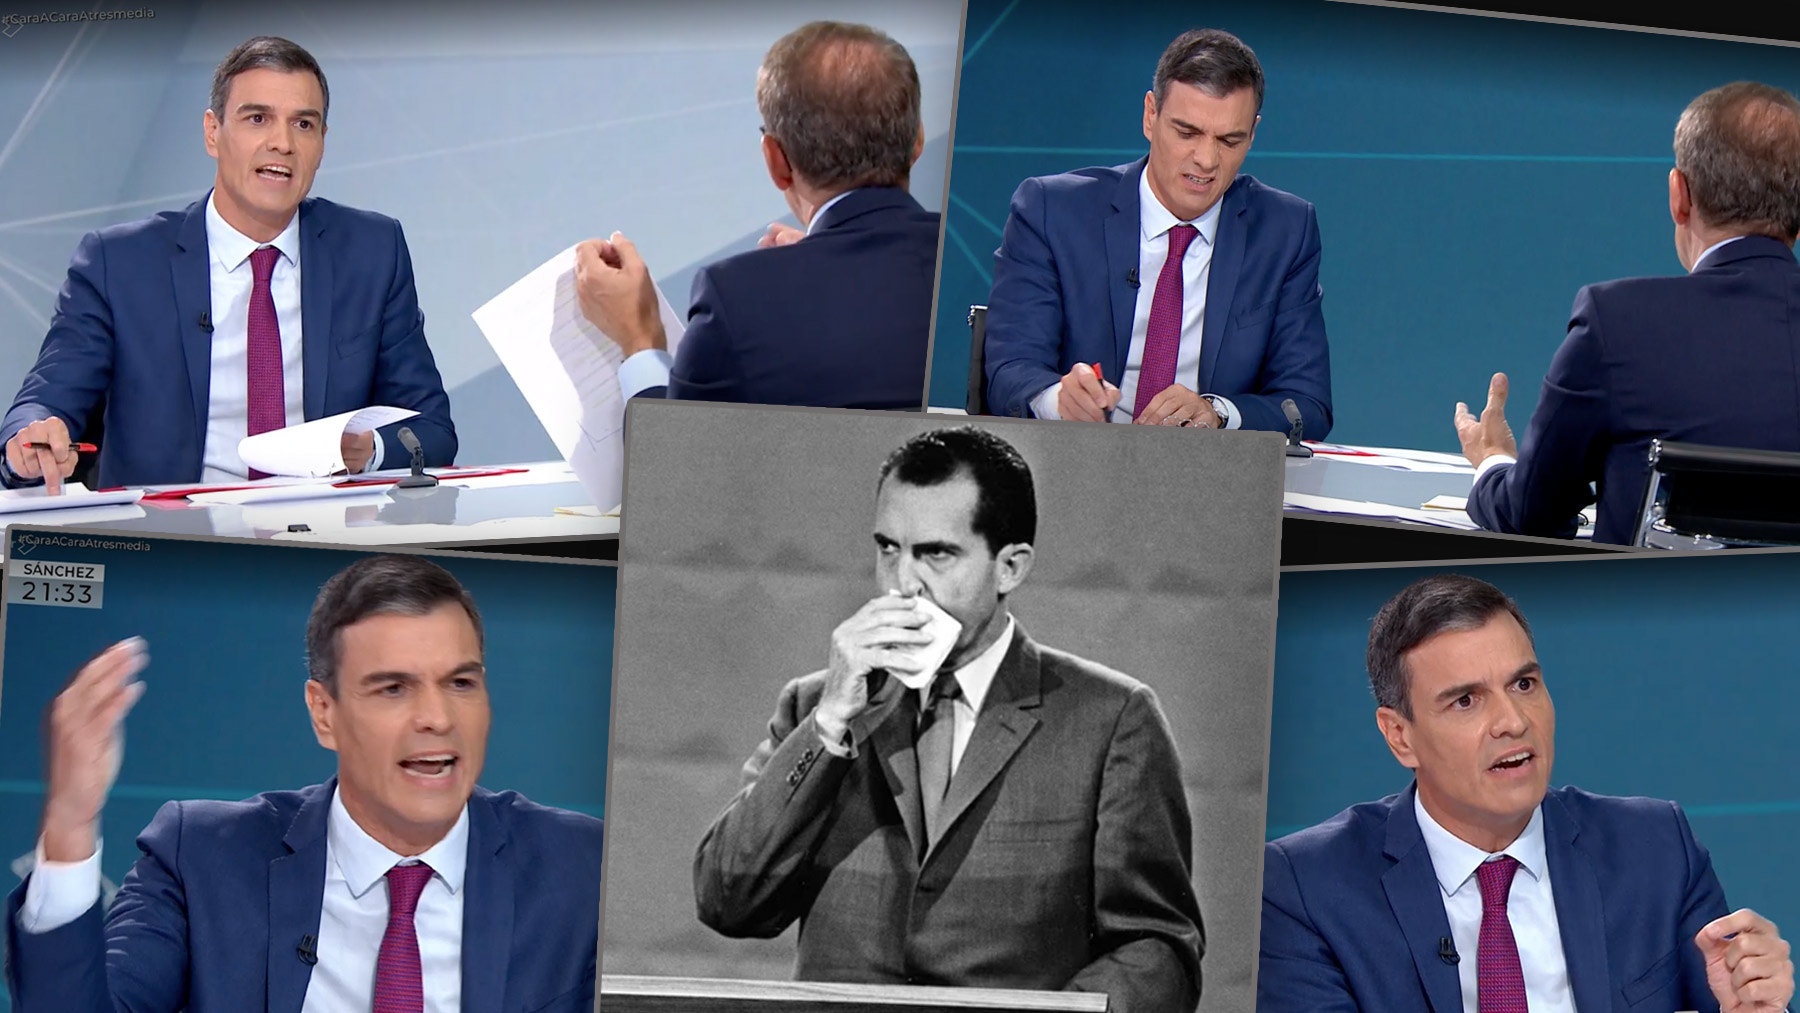 La maldición del sudor en los debates que condenó a Nixon hunde a un colérico Sánchez